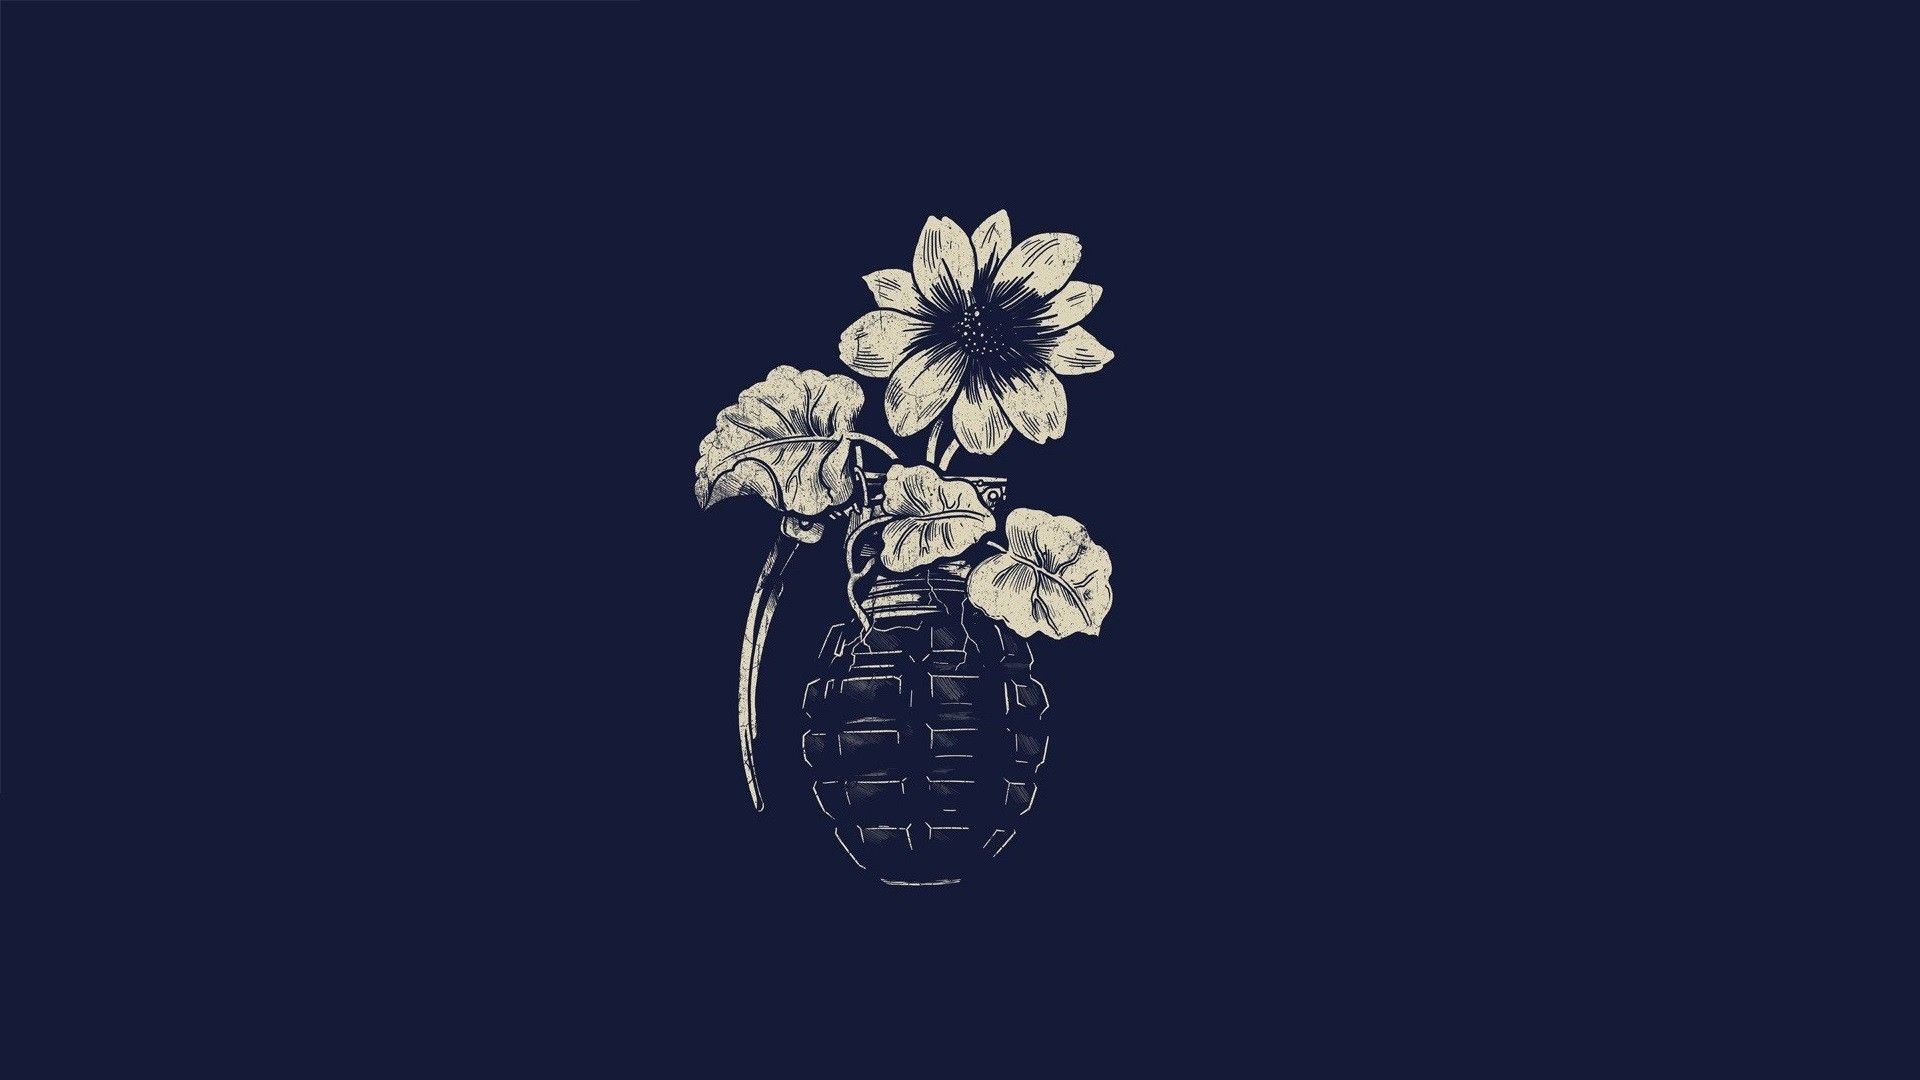 Free download Flower grenade wallpaper grenade vase flowers simple